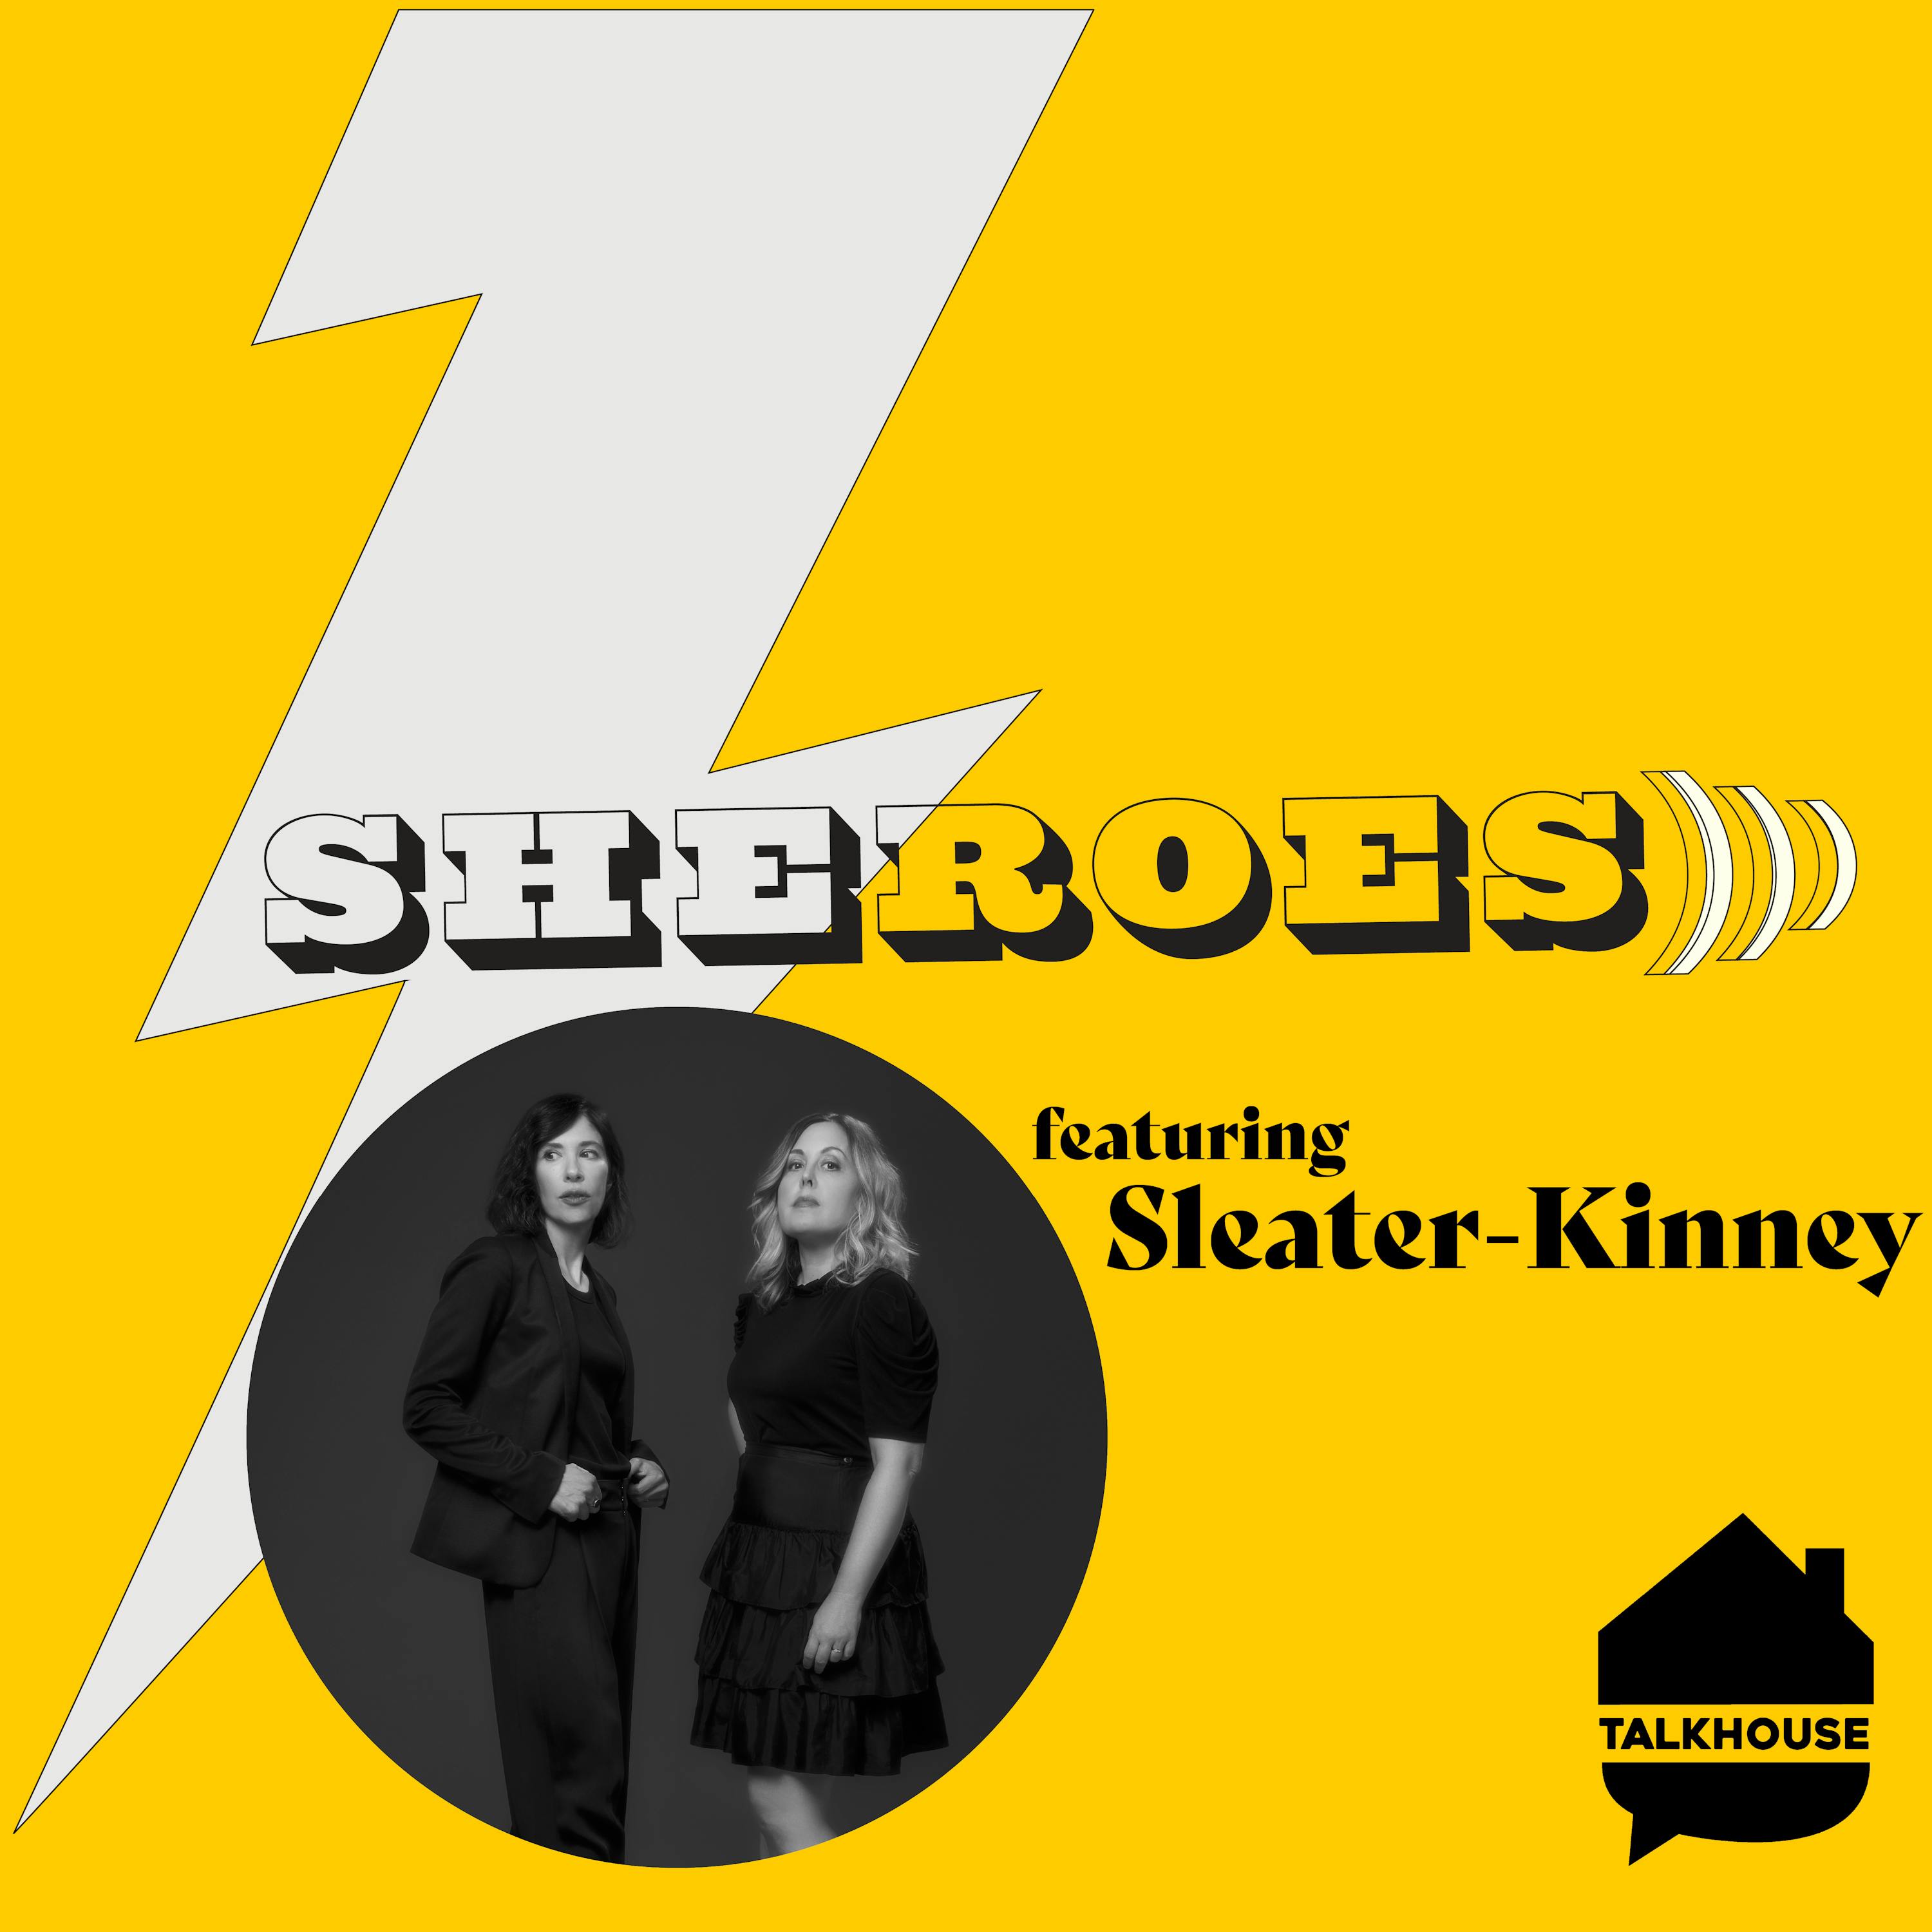 A SHEROES Journey: Sleater-Kinney